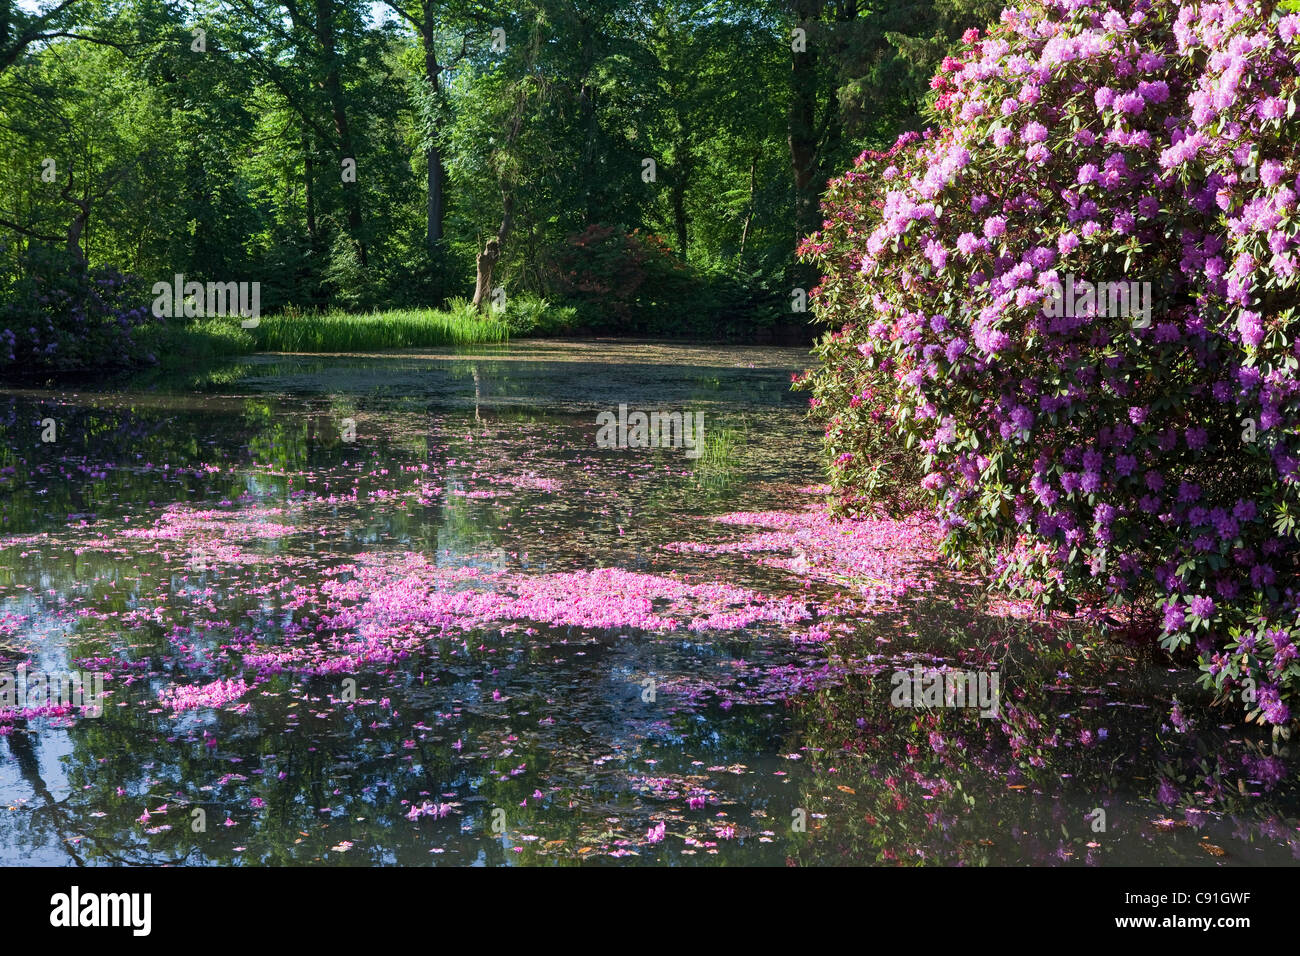 Rhododendron rose pétales flottant dans l'eau, paysage, Breidings jardin jardin, Soltau, Basse-Saxe, Allemagne Banque D'Images